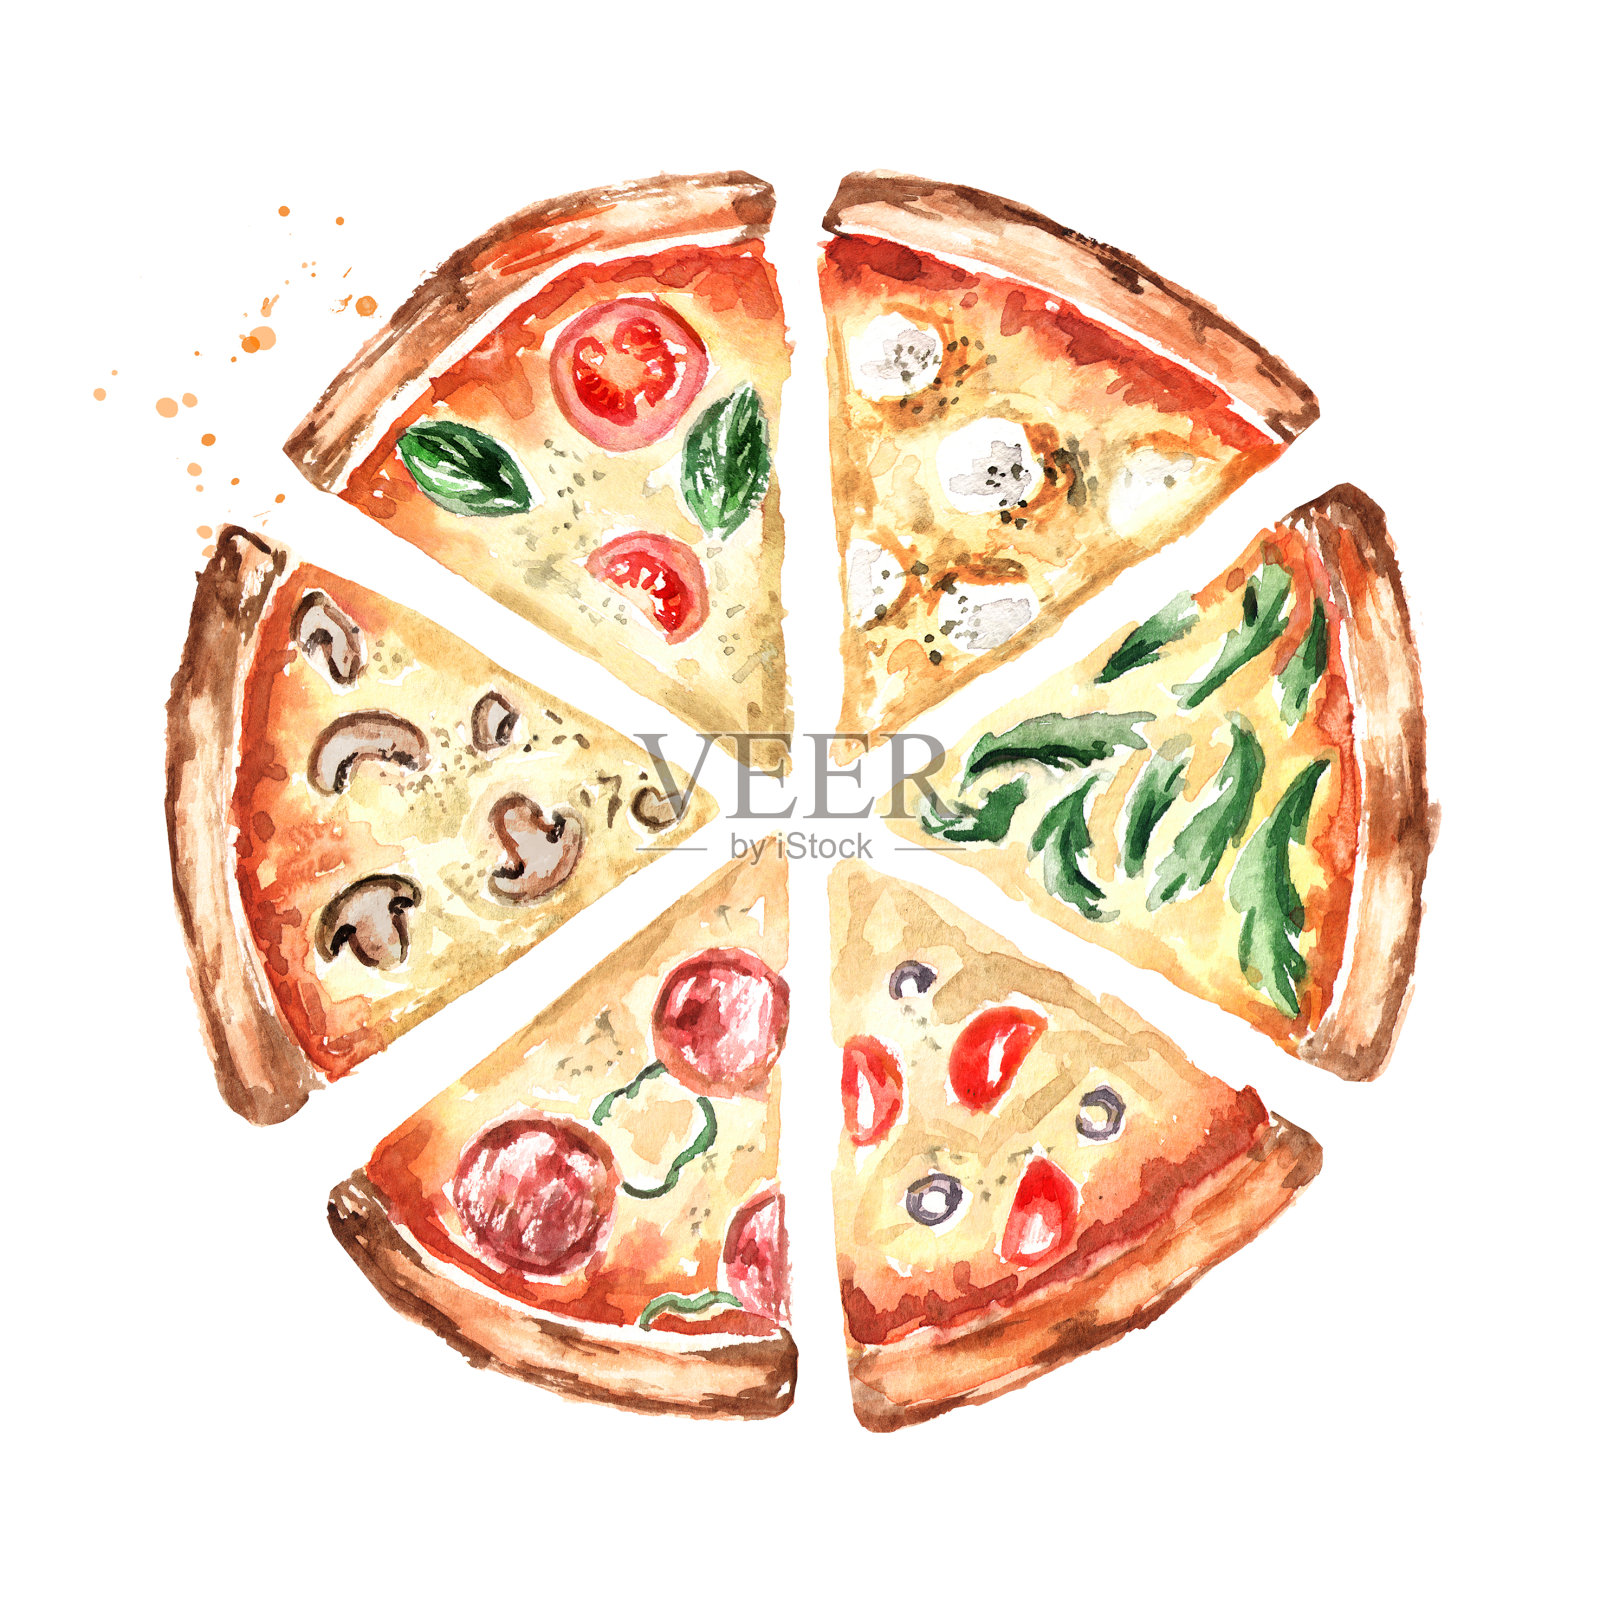 不同配料的披萨片，俯视图。水彩手绘插图，孤立的白色背景设计元素图片